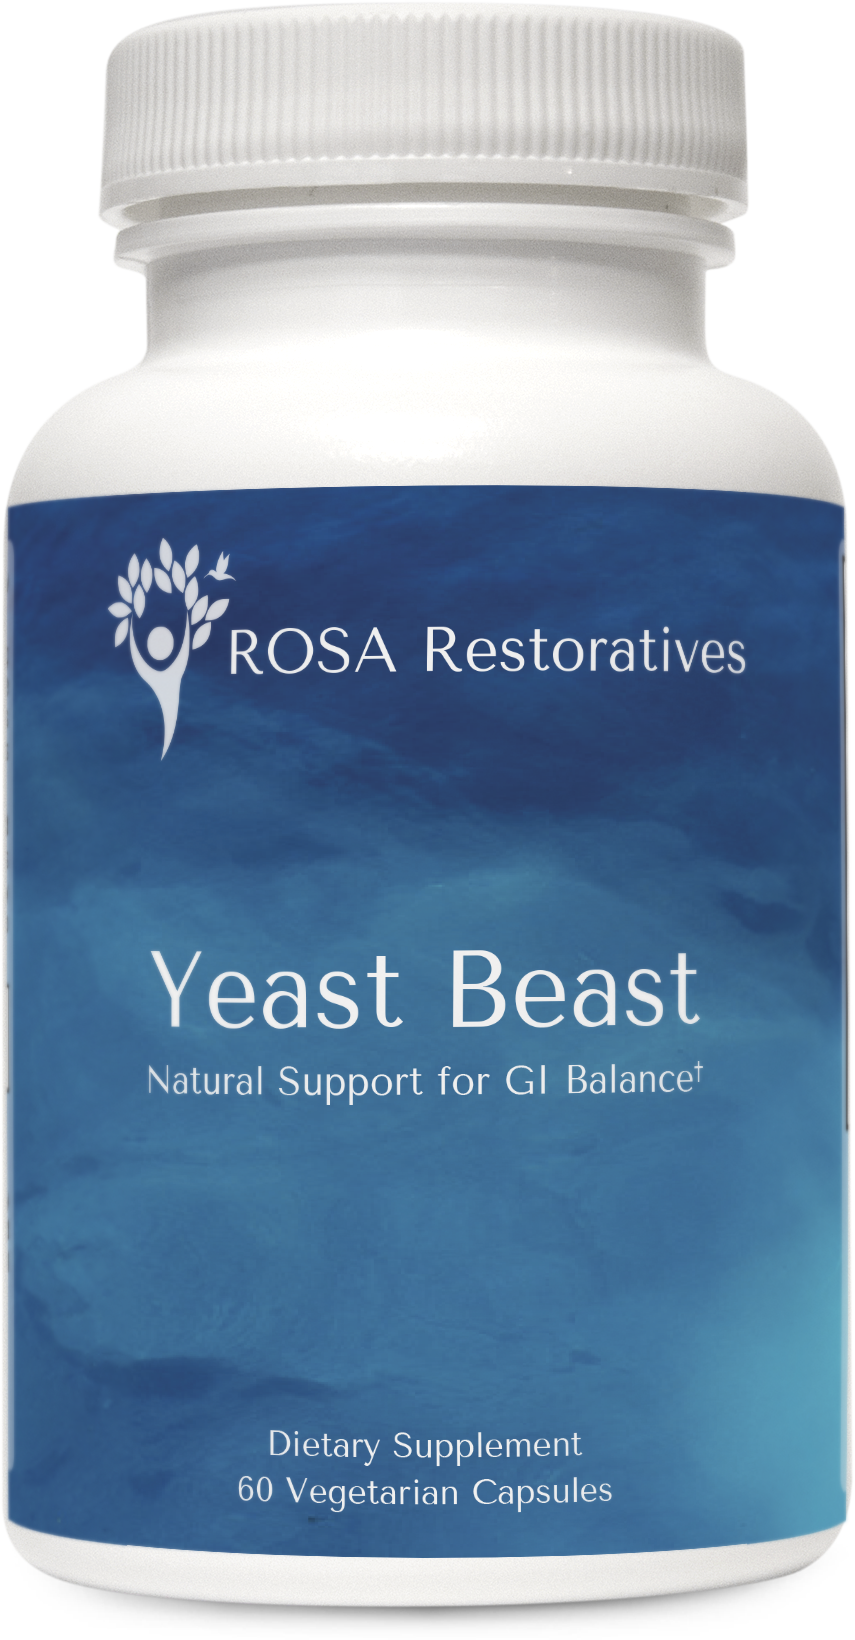 Yeast Beast